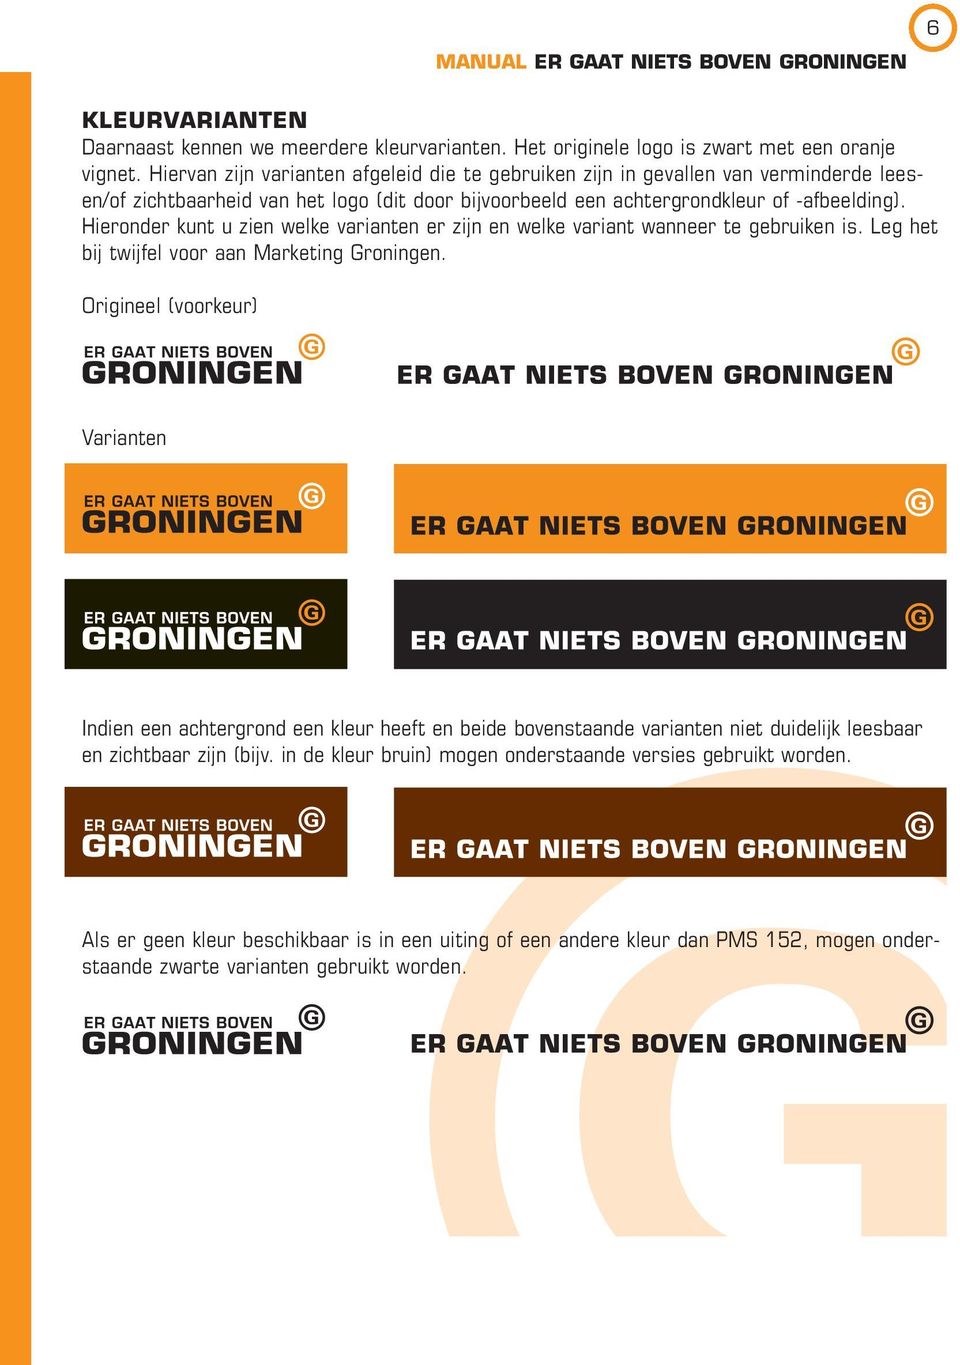 ieronder kunt u zien welke varianten er zijn en welke variant wanneer te gebruiken is. Leg het bij twijfel voor aan Marketing Groningen.